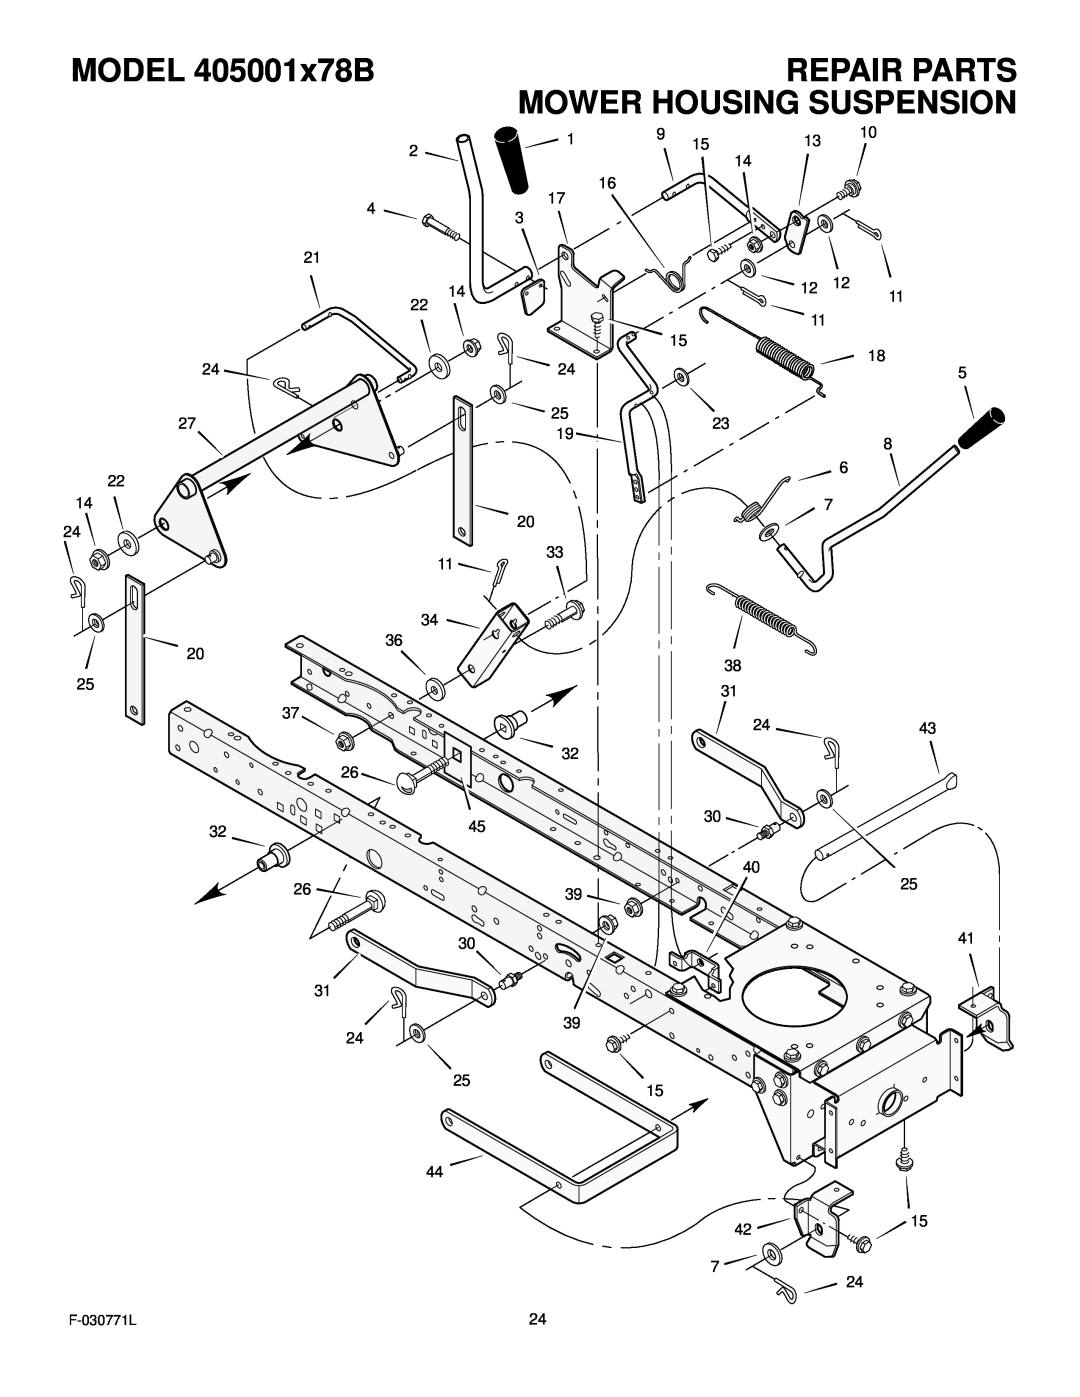 Murray manual Repair Parts Mower Housing Suspension, MODEL 405001x78B, 2515, F-030771L 